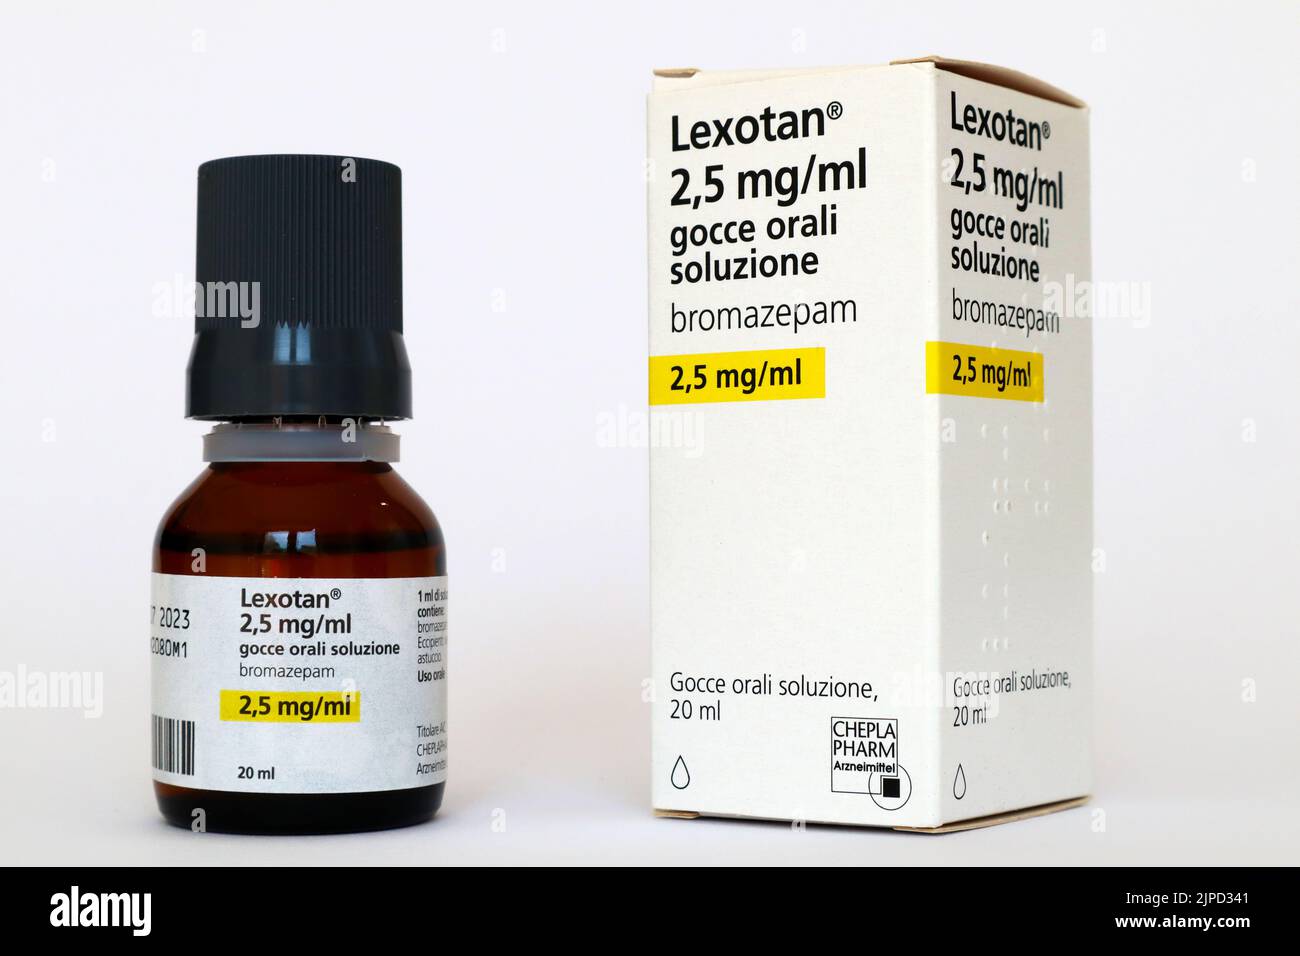 LEXOTAN Bromazepam, un médicament aux benzodiazépines. Médicament utilisé pour traiter l'anxiété grave. Cheplapharm Arzneimittel GmbH Banque D'Images